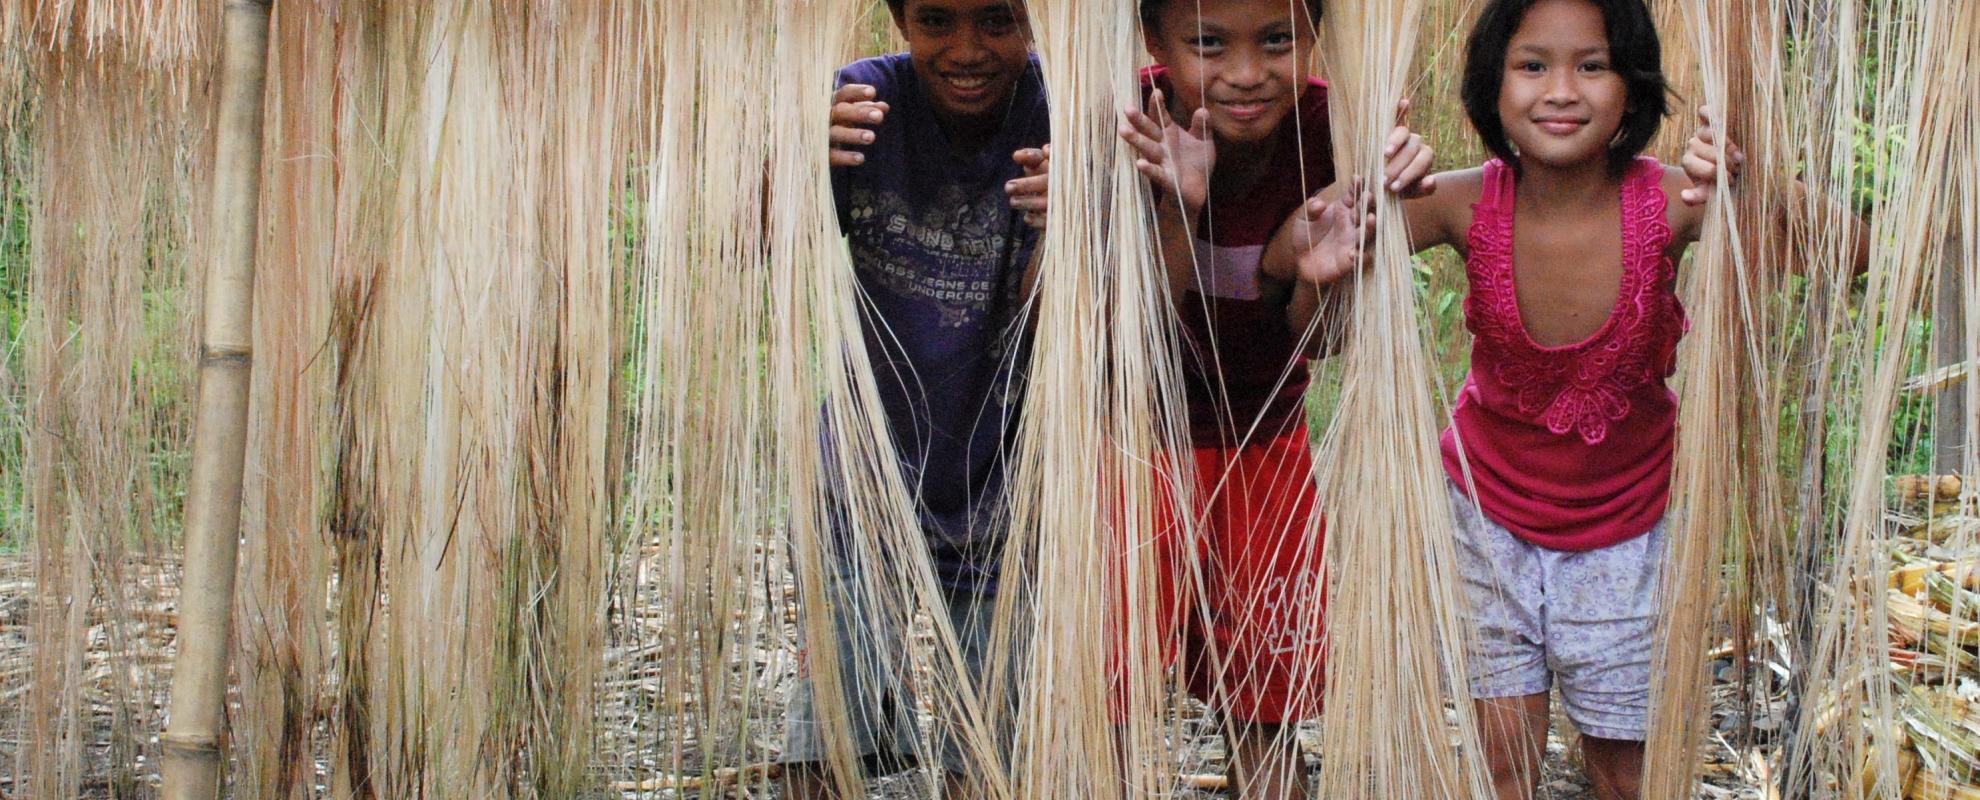 Kinderen spelen met drogende abaca (manila vezels) in de Filipijnen